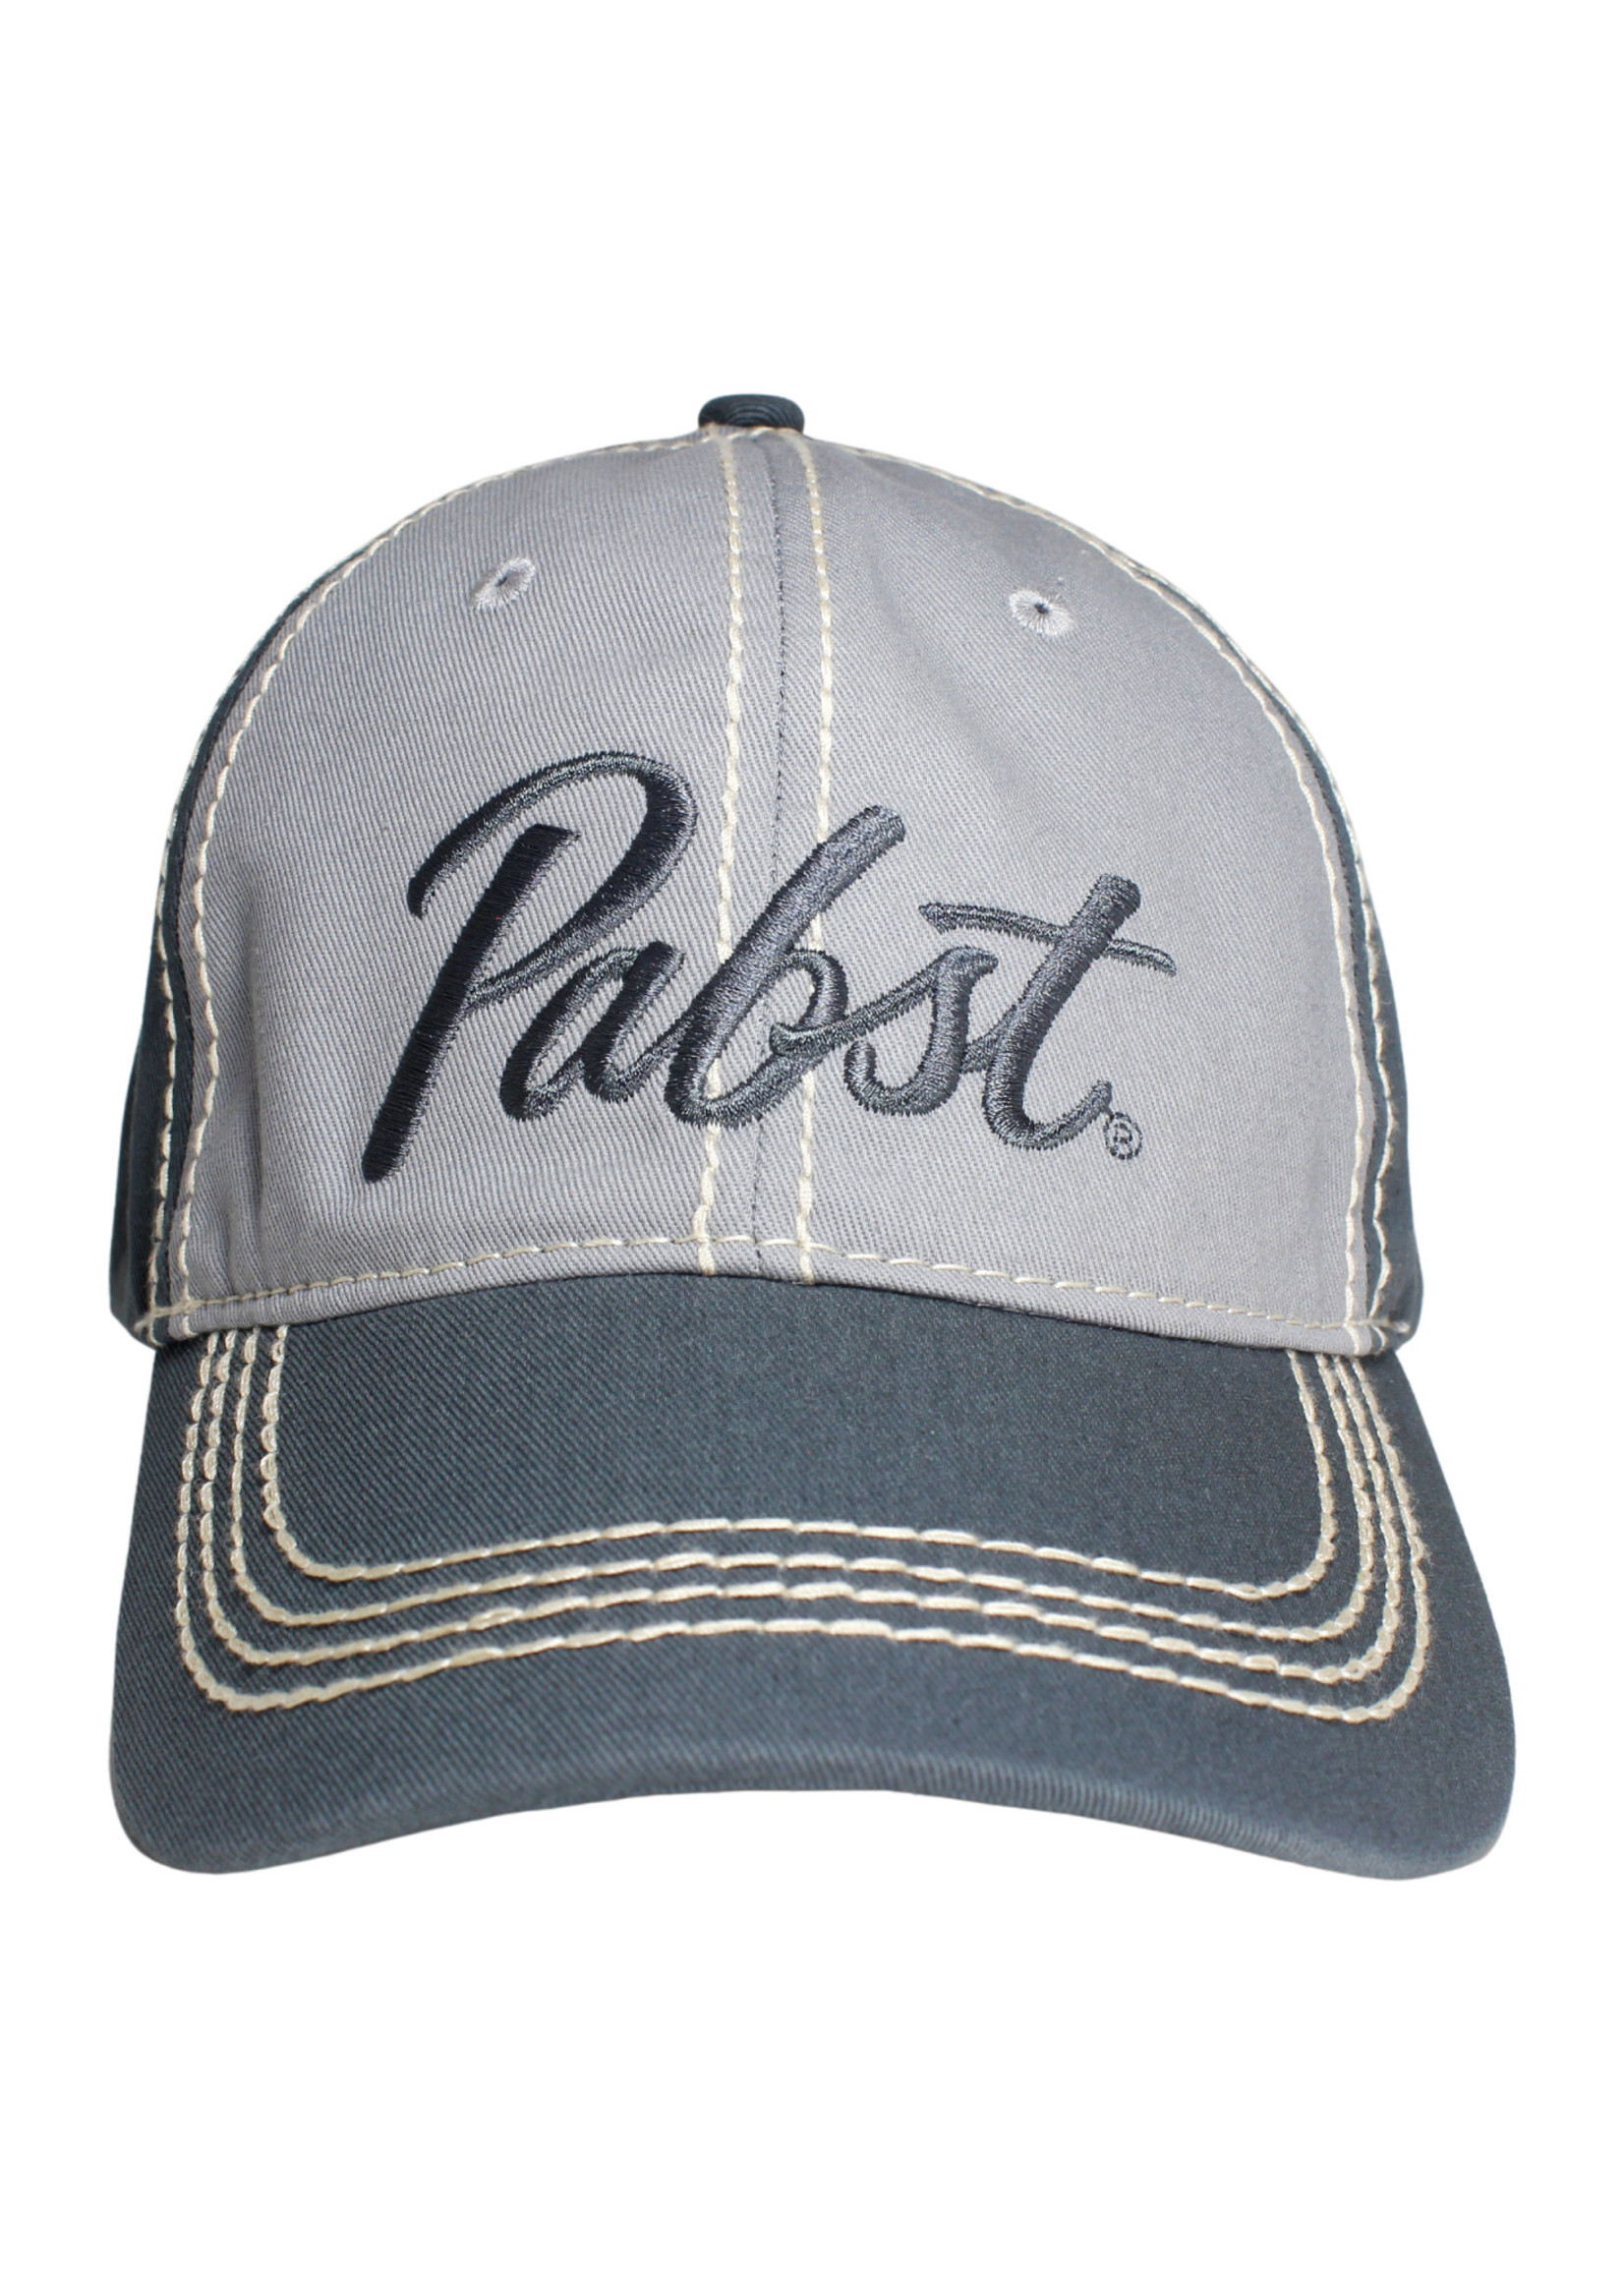 Pabst Pabst Script 1844 Grey Cap